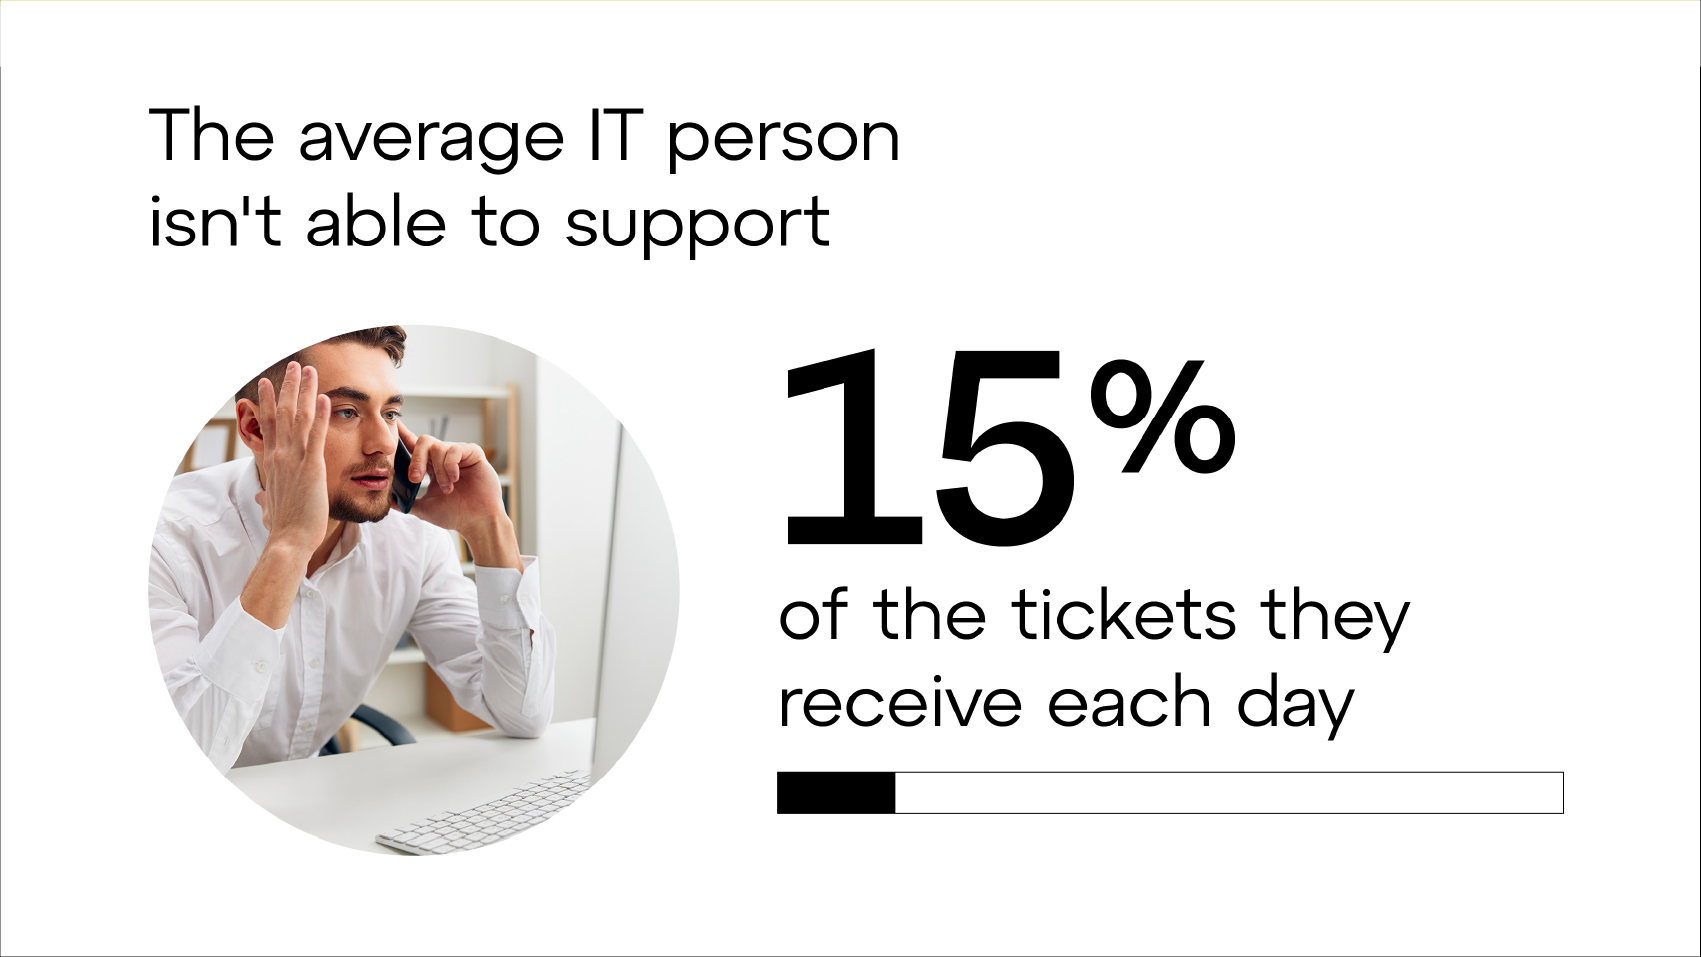 Durchschnittliche IT-Mitarbeitende sind nicht in der Lage, 15 % der täglich eingehenden Anfragen zu bearbeiten.